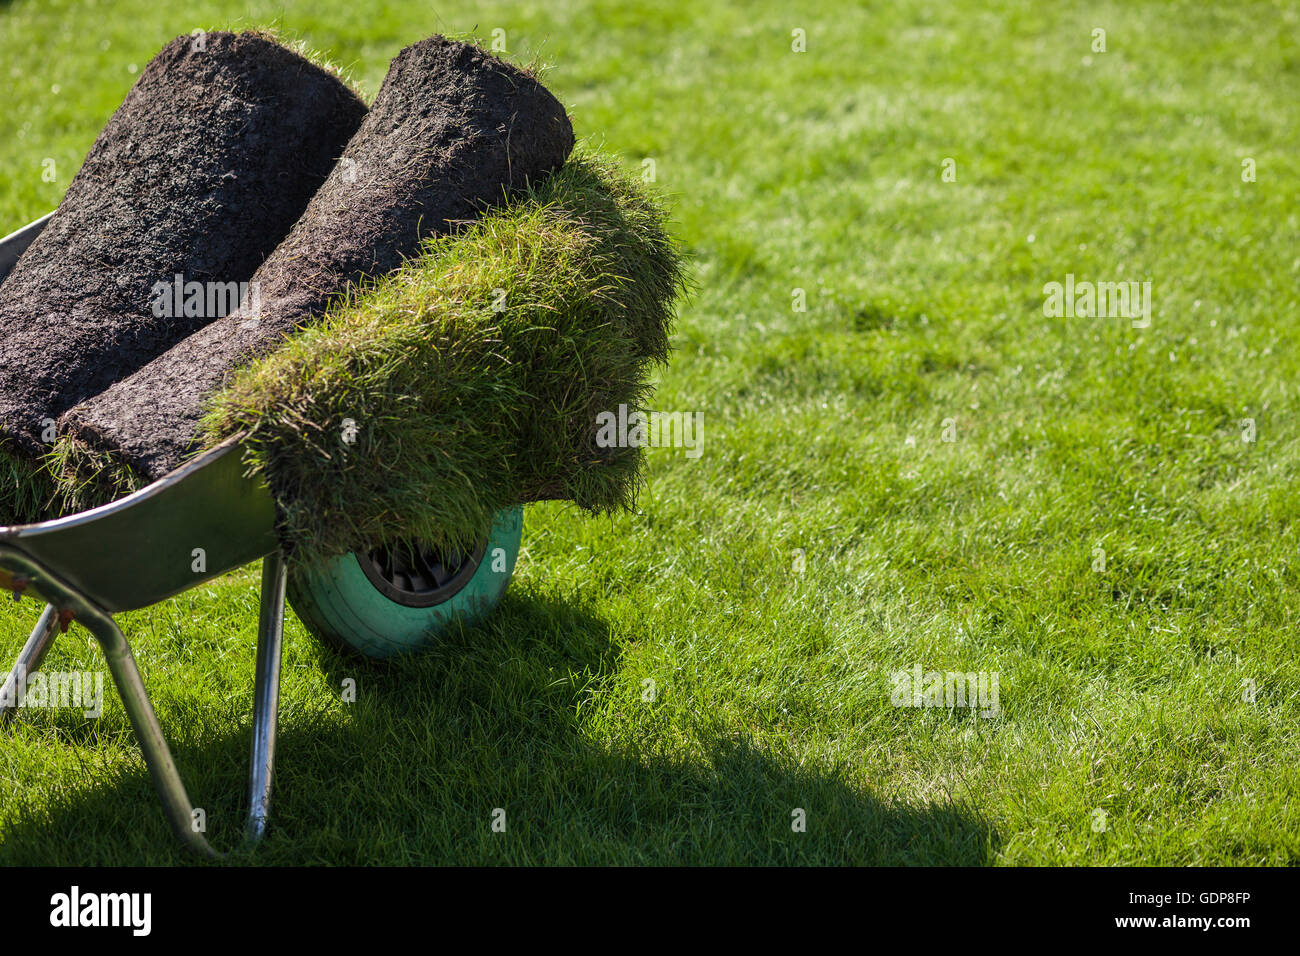 Rolls of turf in garden wheelbarrow Stock Photo